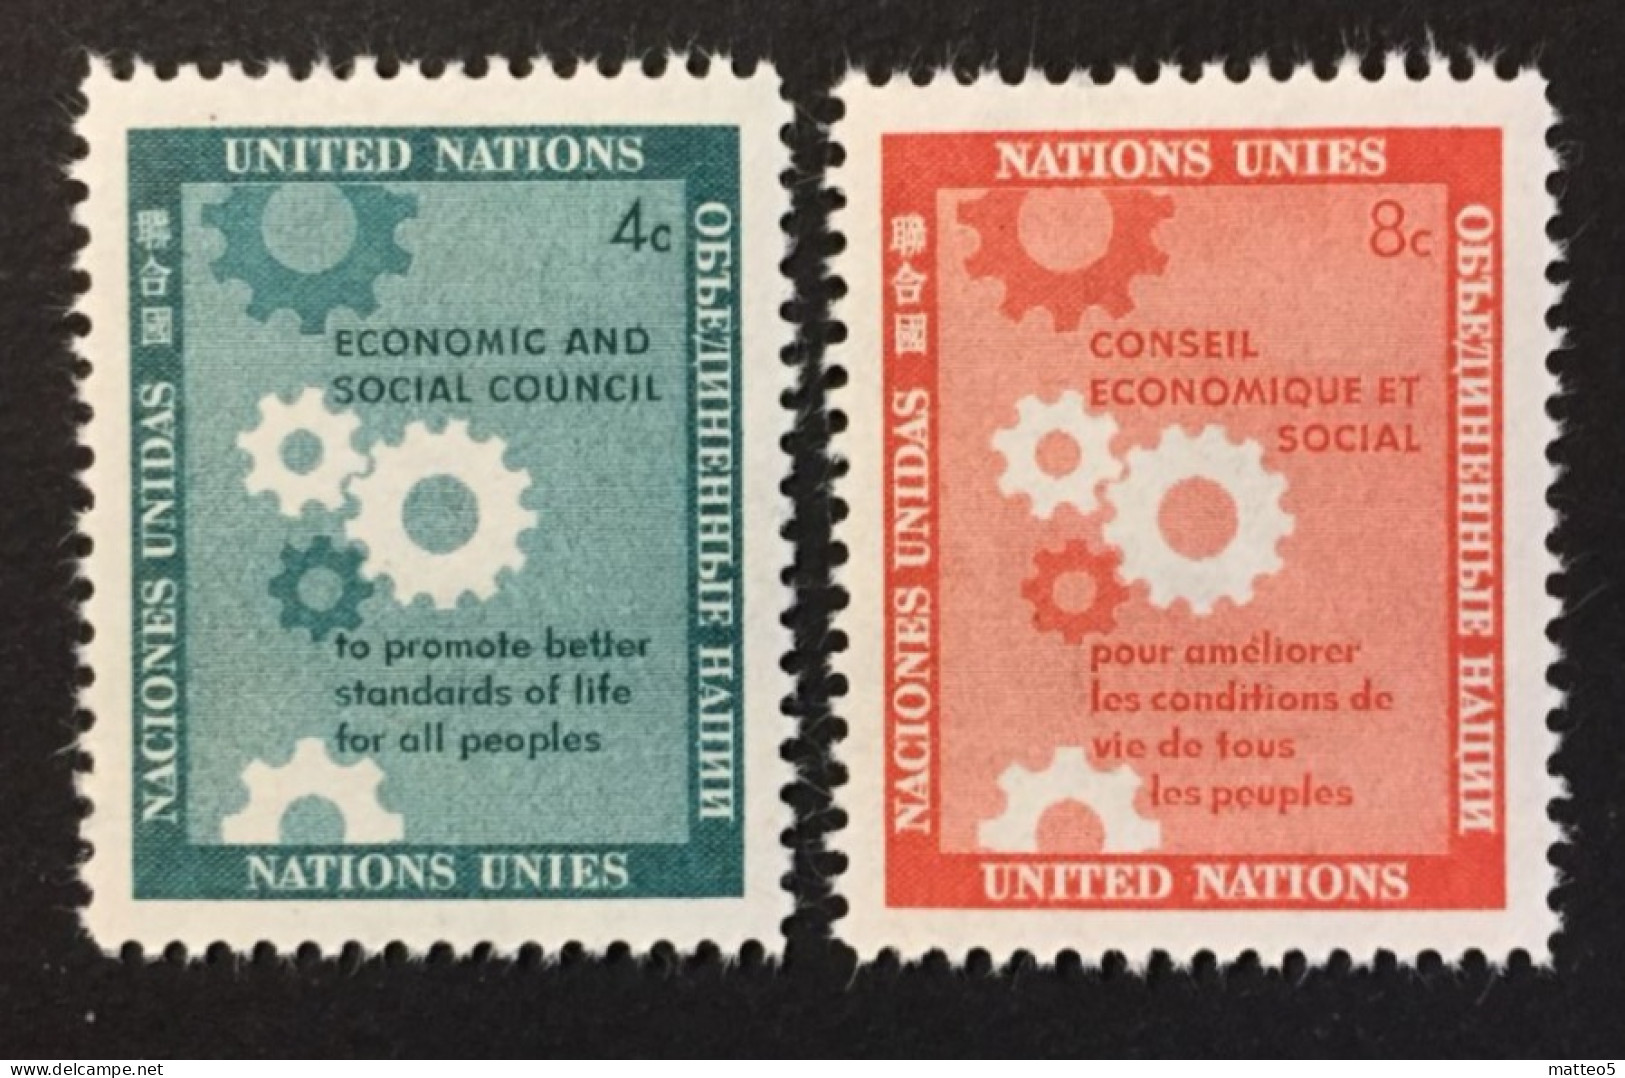 1958 - United Nations UNO UN ONU - Economic And Social Council, Gearwheels -  Unused - Nuevos